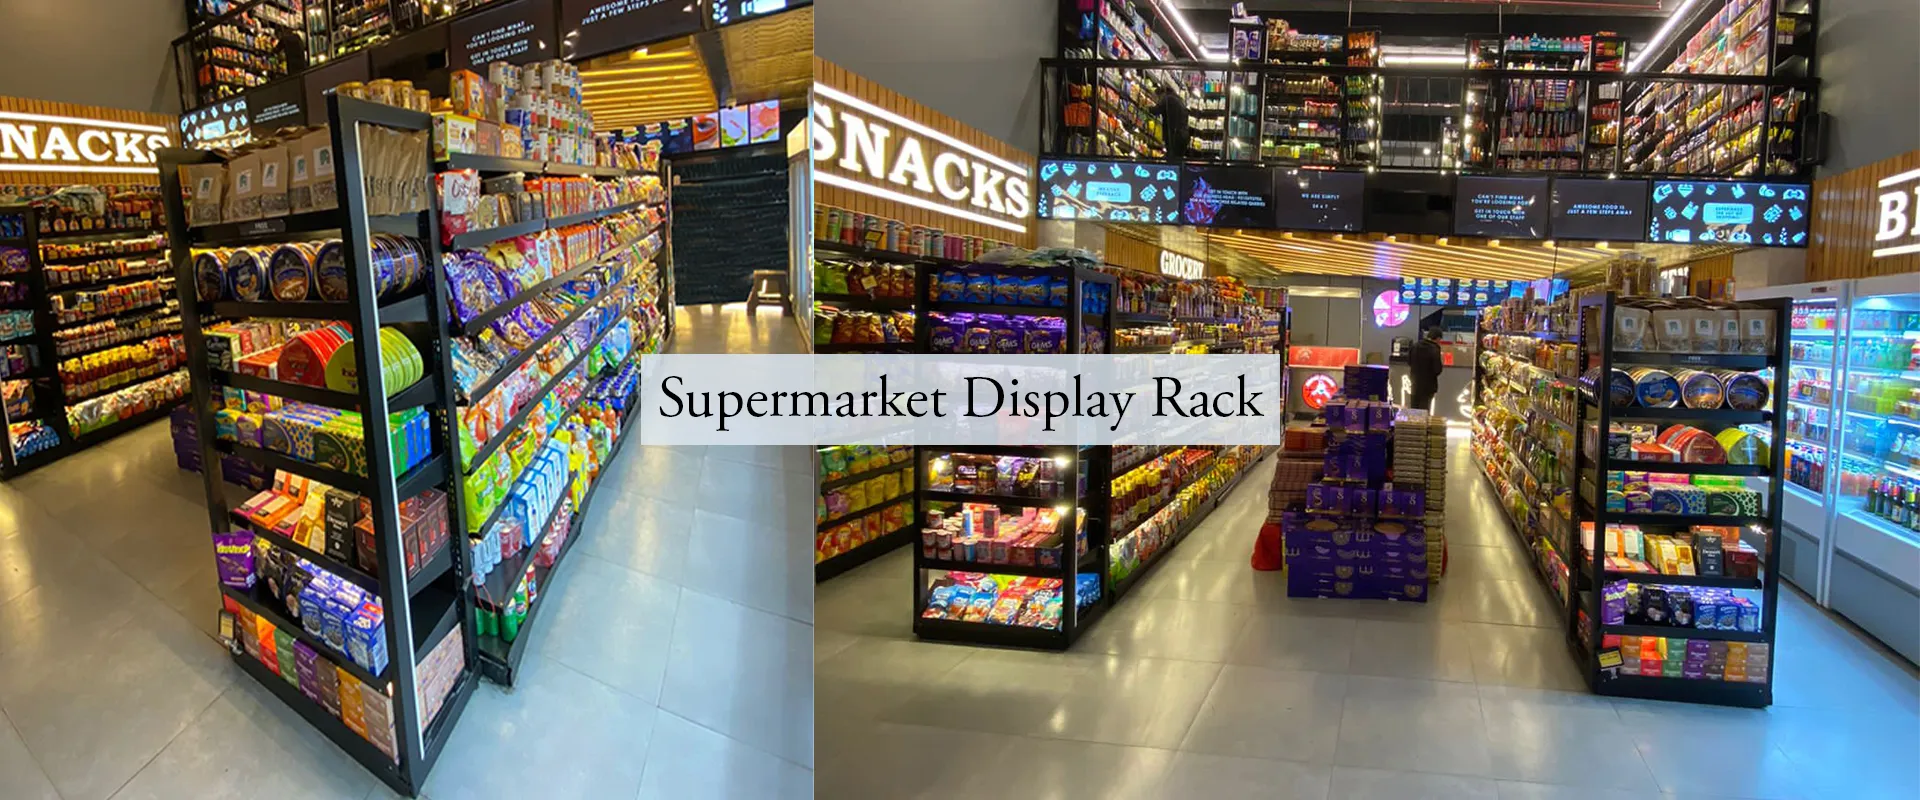 Supermarket Display Rack In Singhana